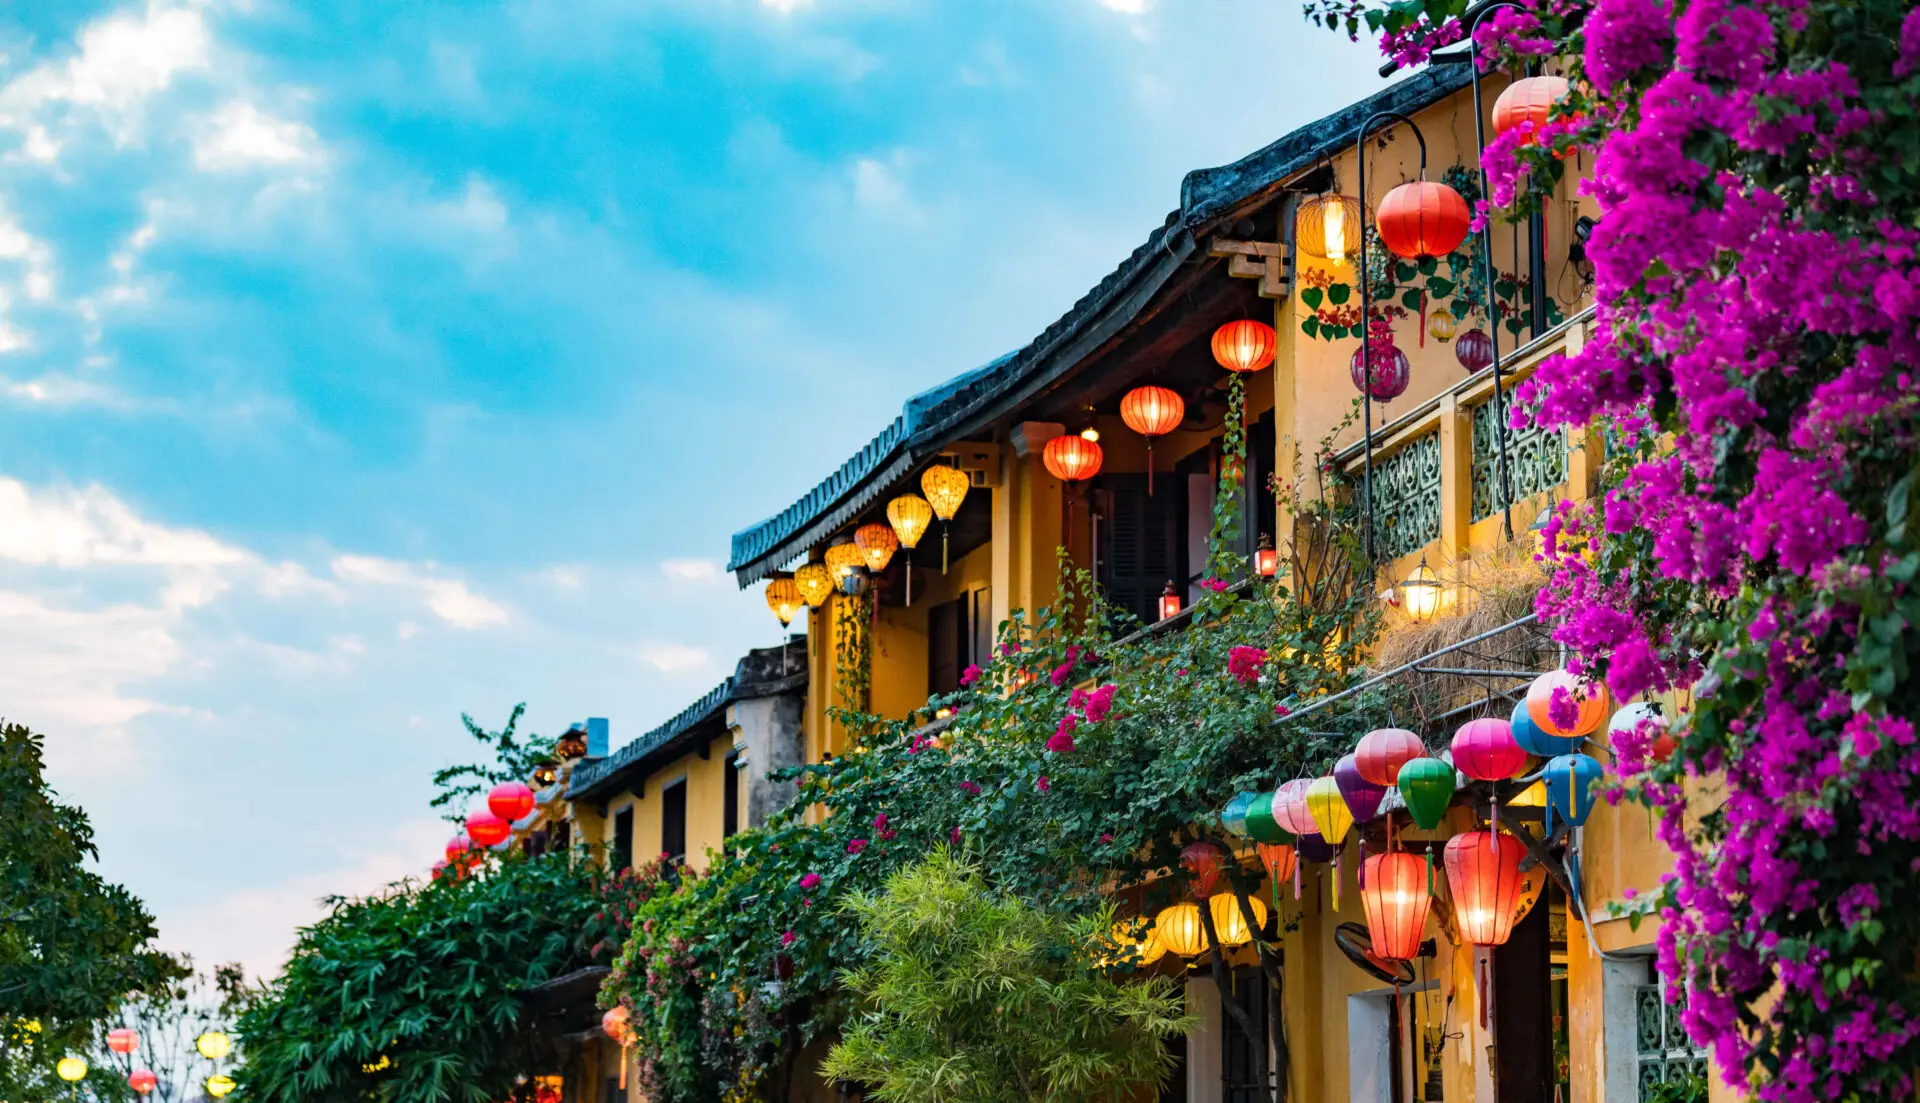 Street lanterns in Hoi An, Vietnam